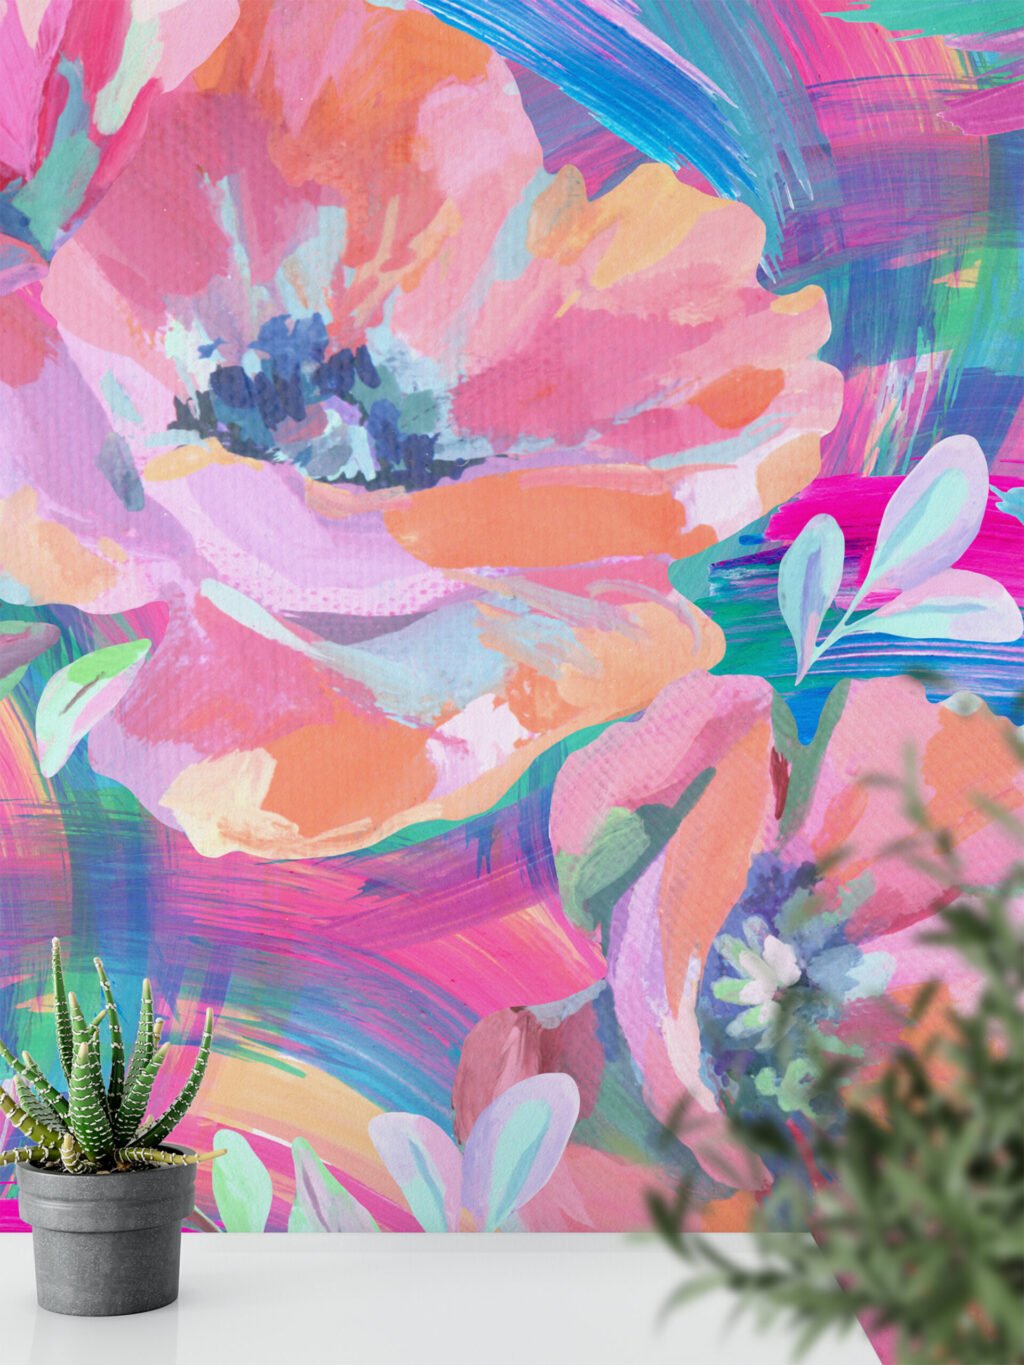 Büyük Soyut Çiçekli Boyanmış Efekt Duvar Kağıdı, Canlı Sulu Boya Çiçekleri Duvar Posteri Çiçekli Duvar Kağıtları 5